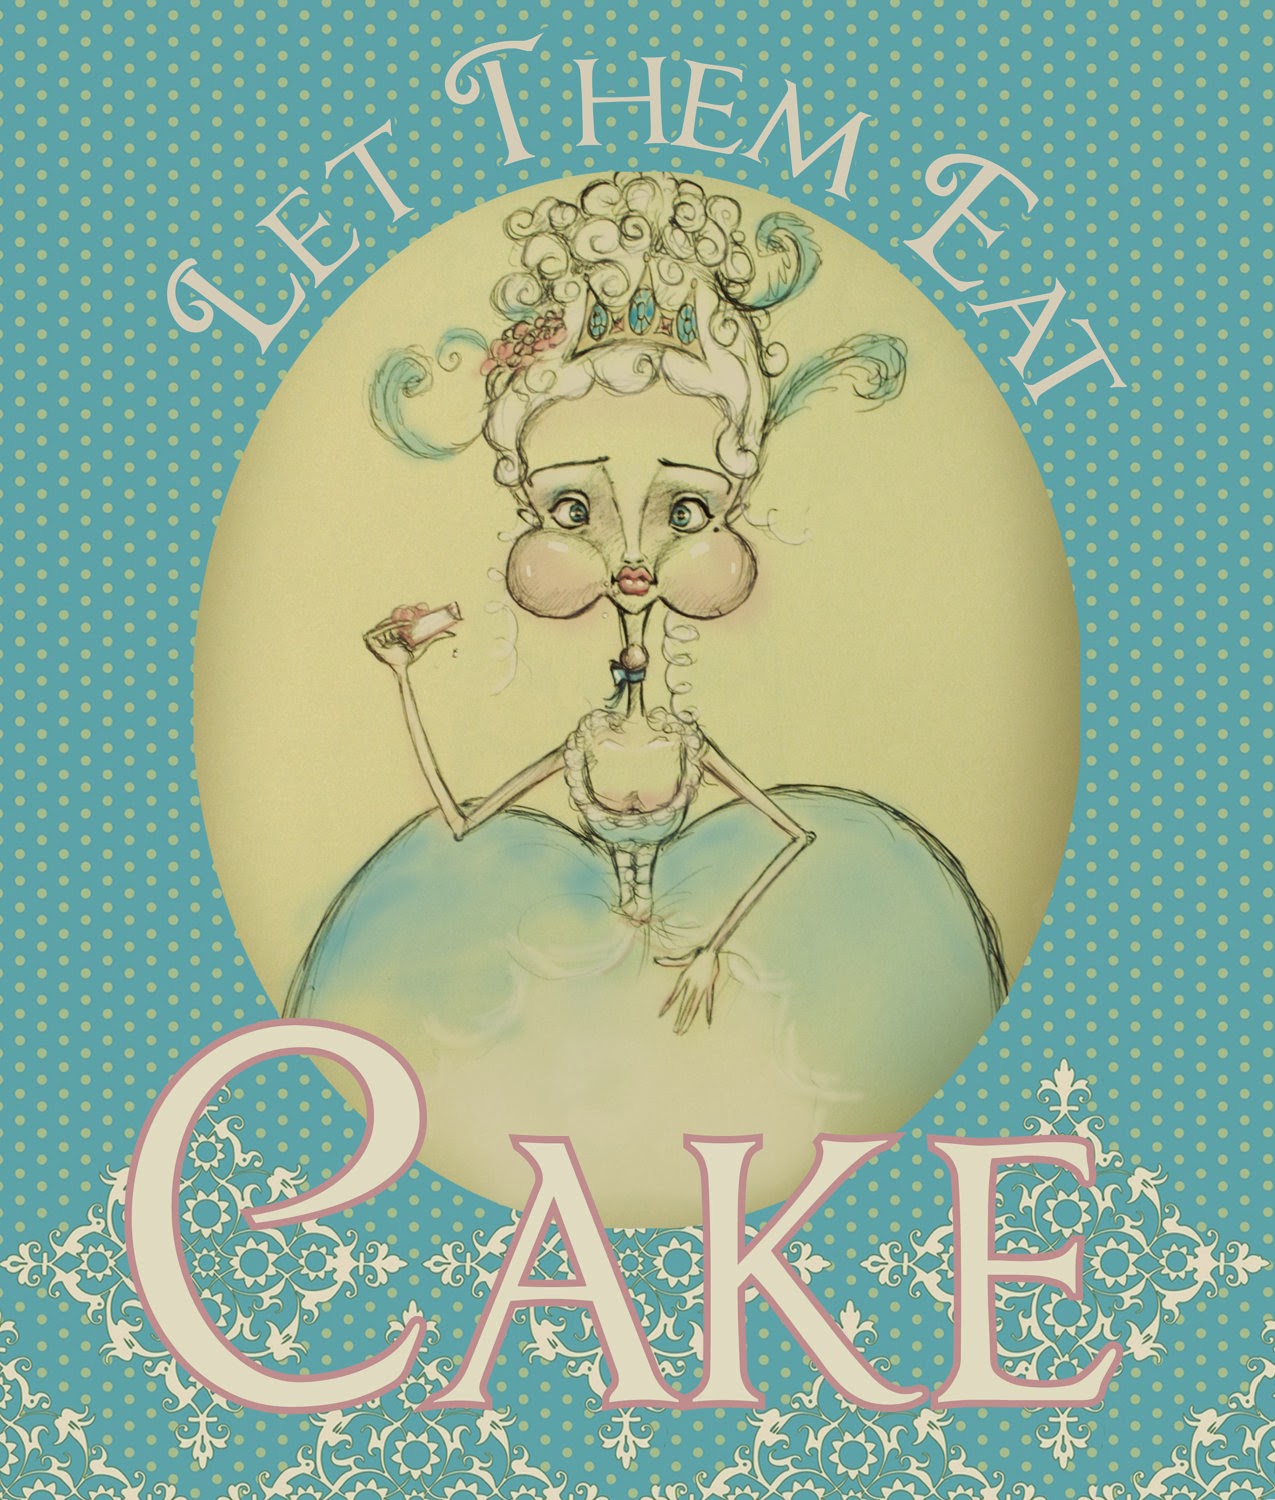 https://www.etsy.com/listing/85533684/marie-antoinette-let-them-eat-cake-art?ref=related-0&is_wholesale=0